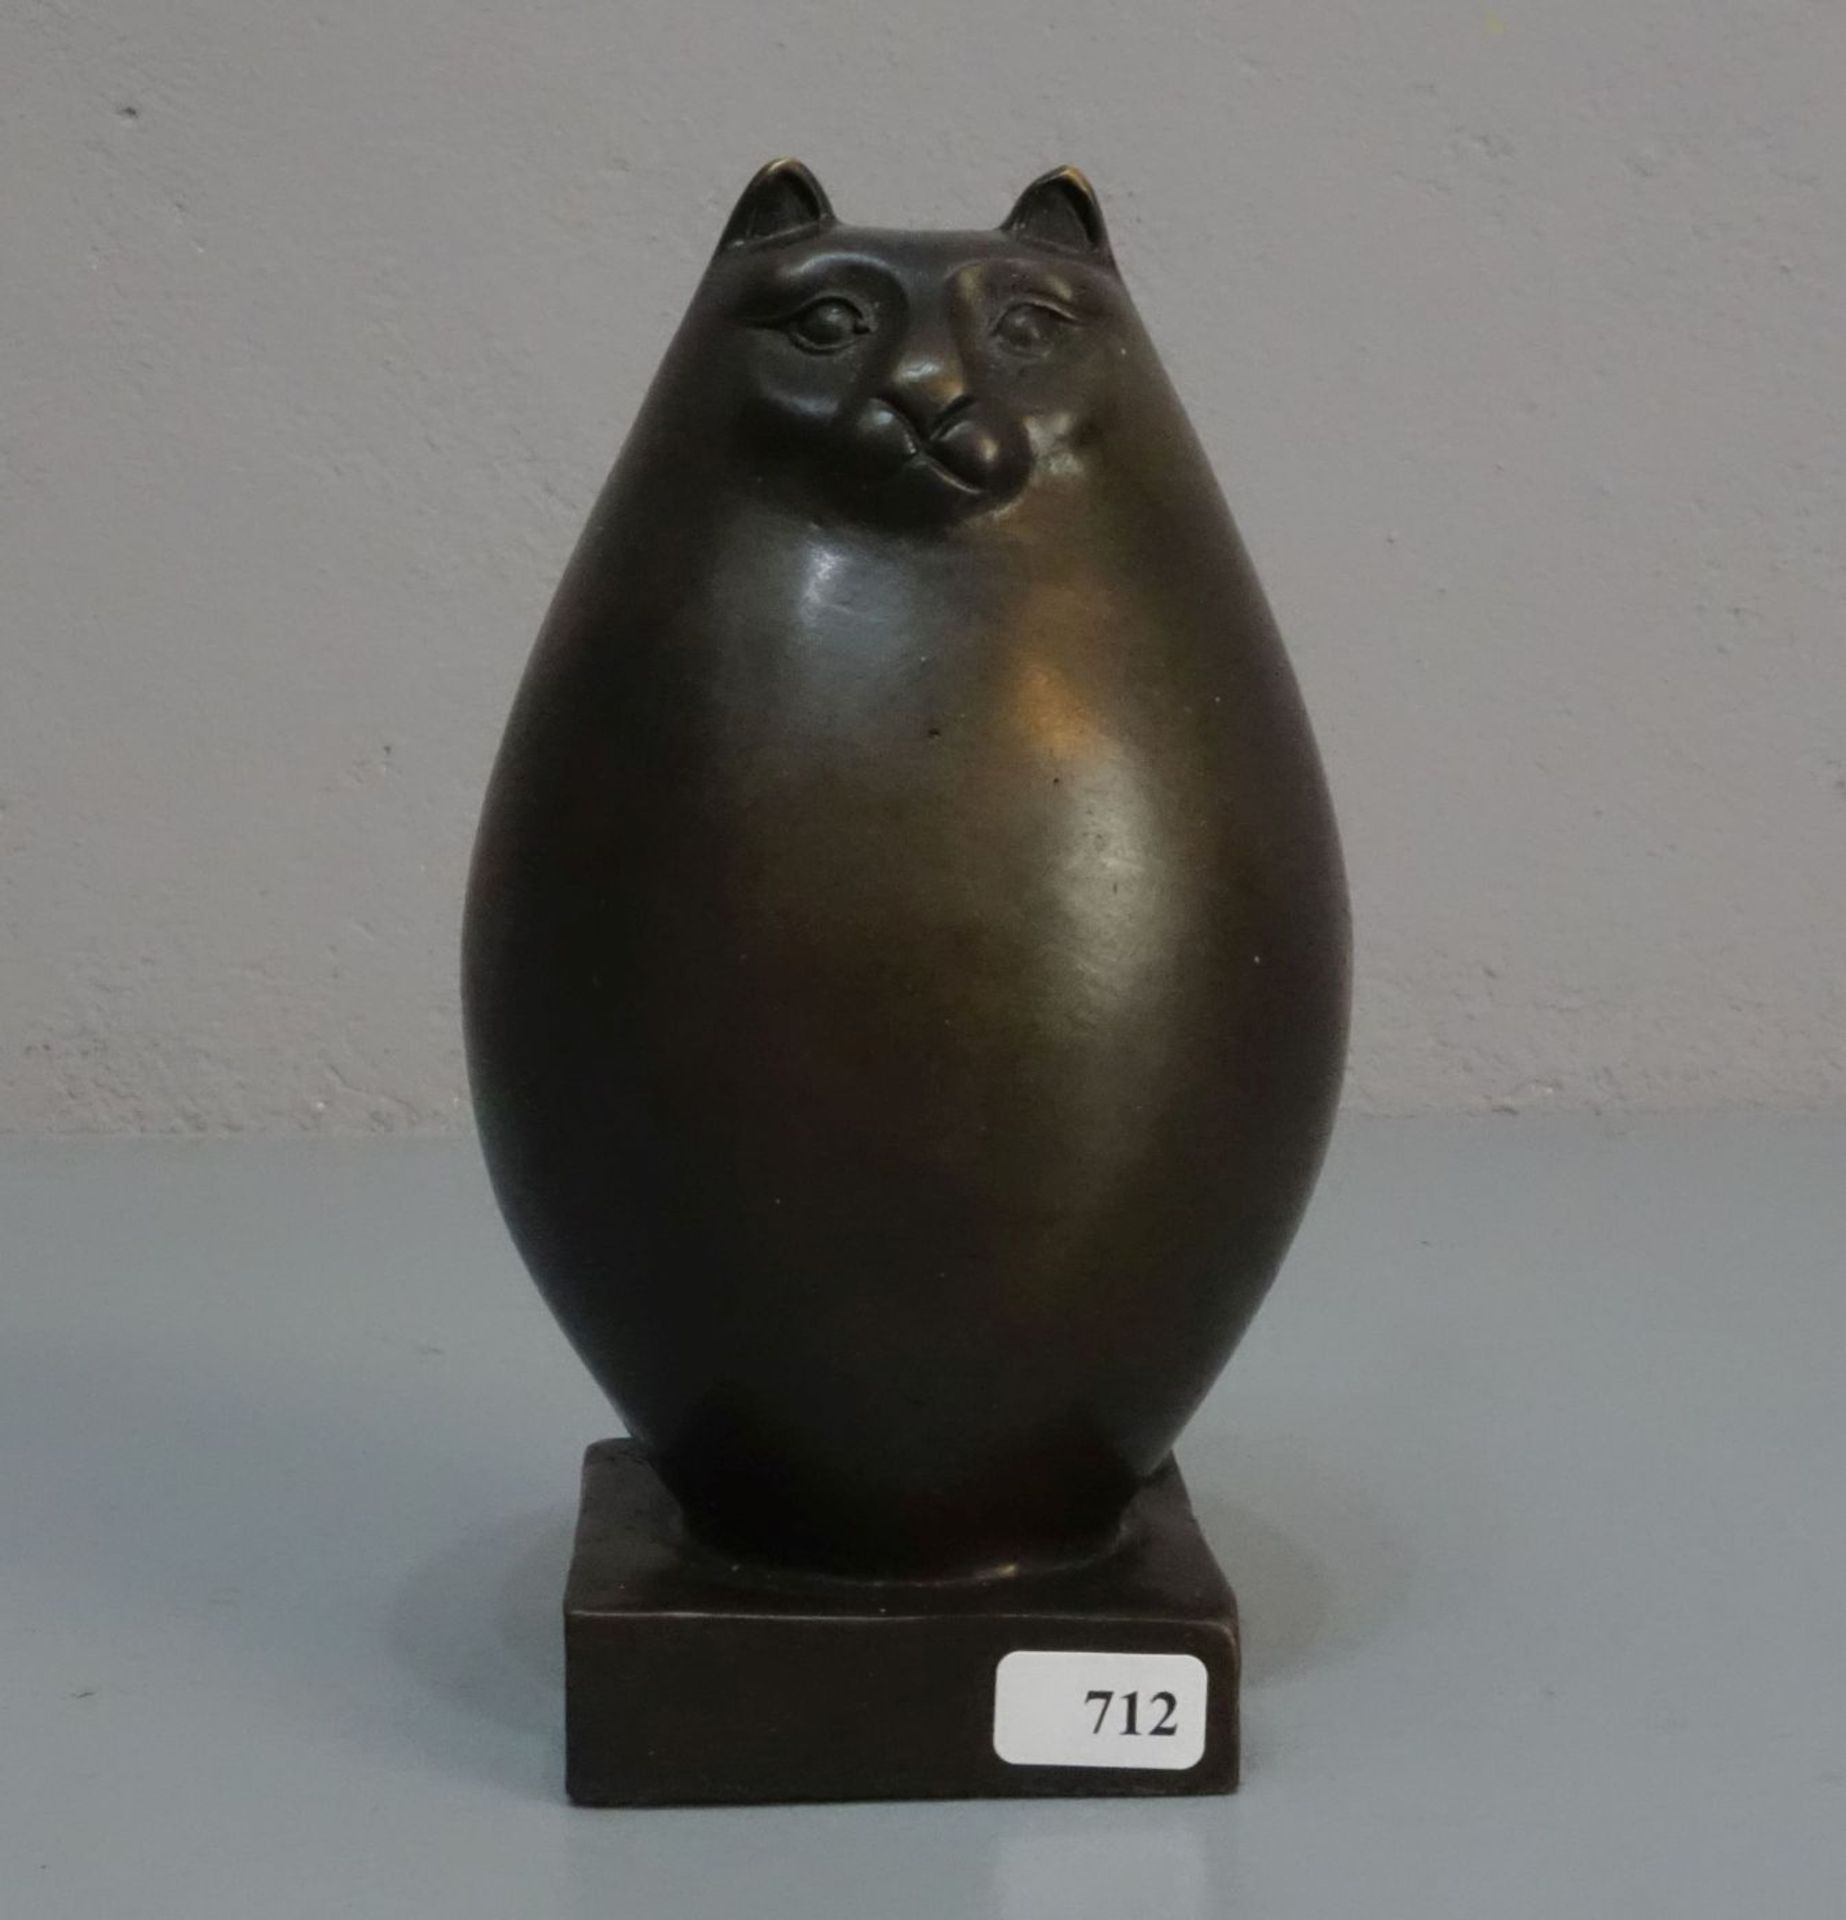 LOPEZ, MIGUEL FERNANDO (auch "Milo", geb. 1955 in Lissabon), Skulptur / sculpture: "Katze",